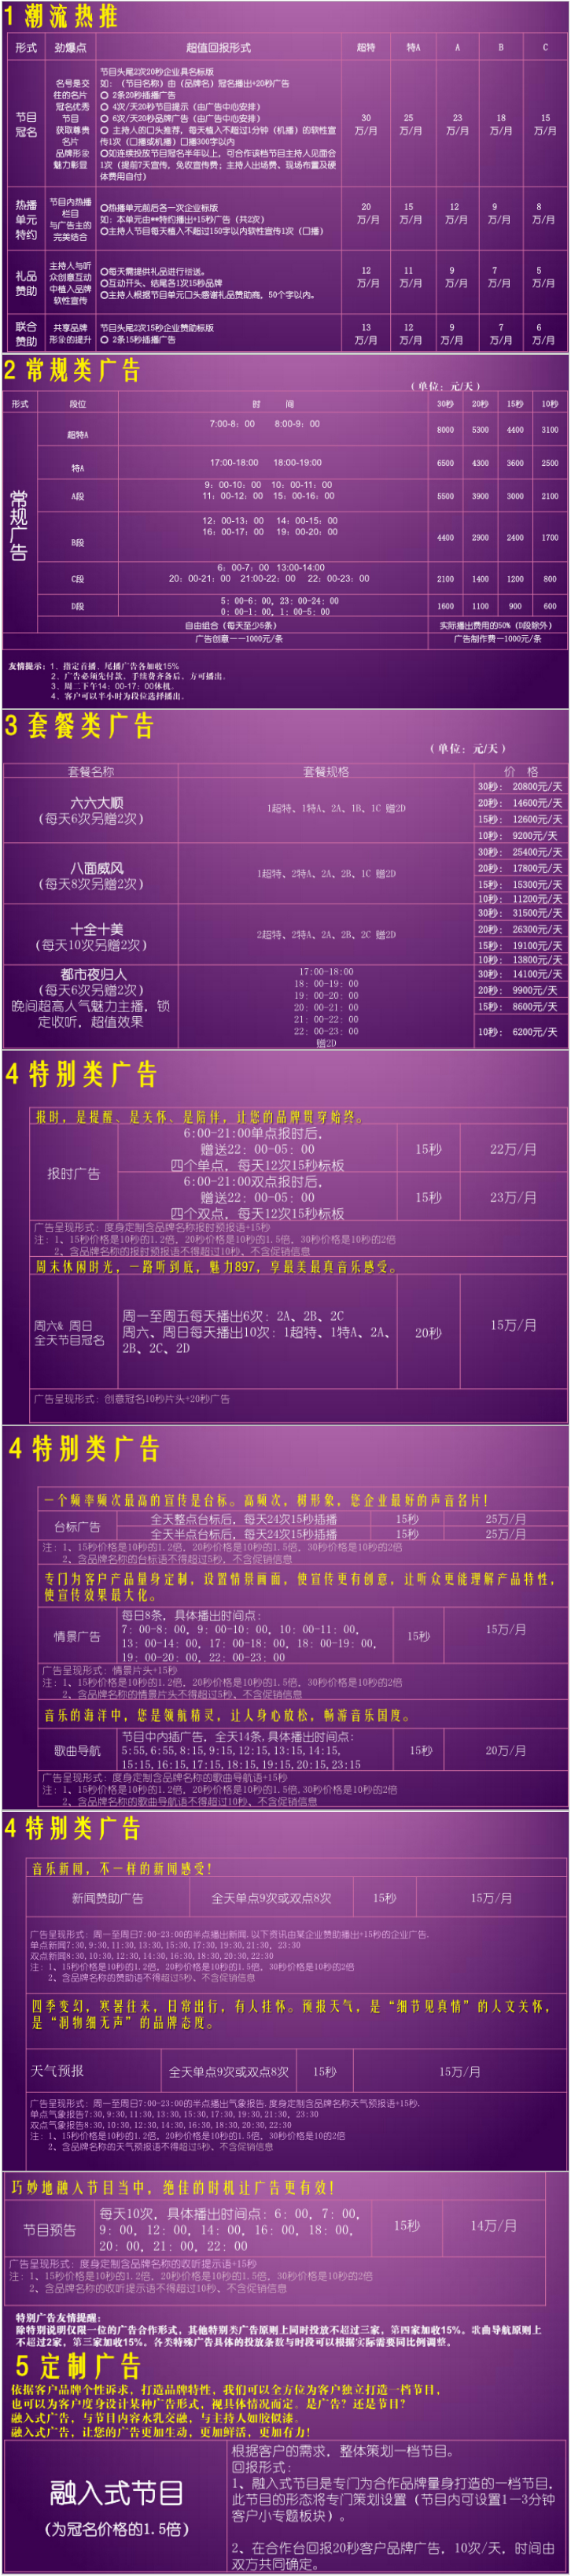 2015江苏人民广播电台音乐频率City FM89.7广告报价表.png